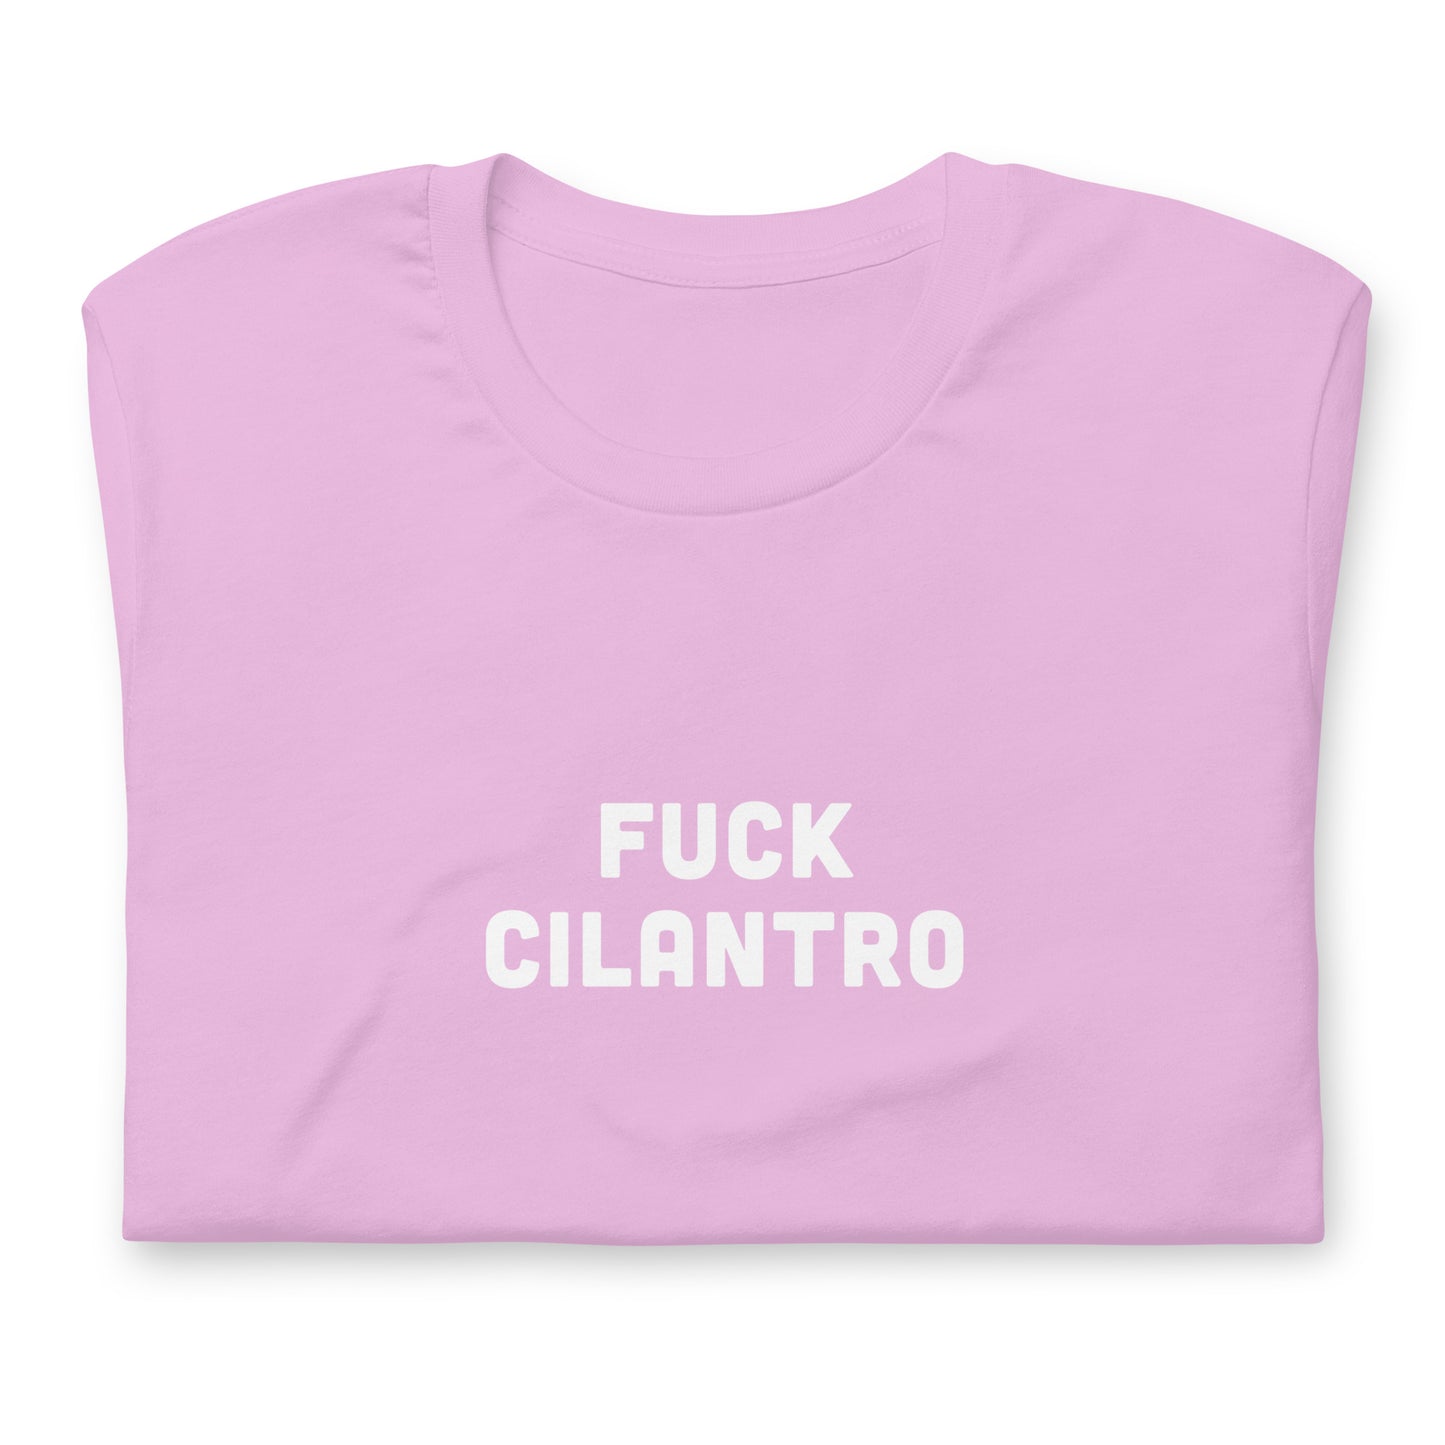 Fuck Cilantro t-shirt  XL Color Forest